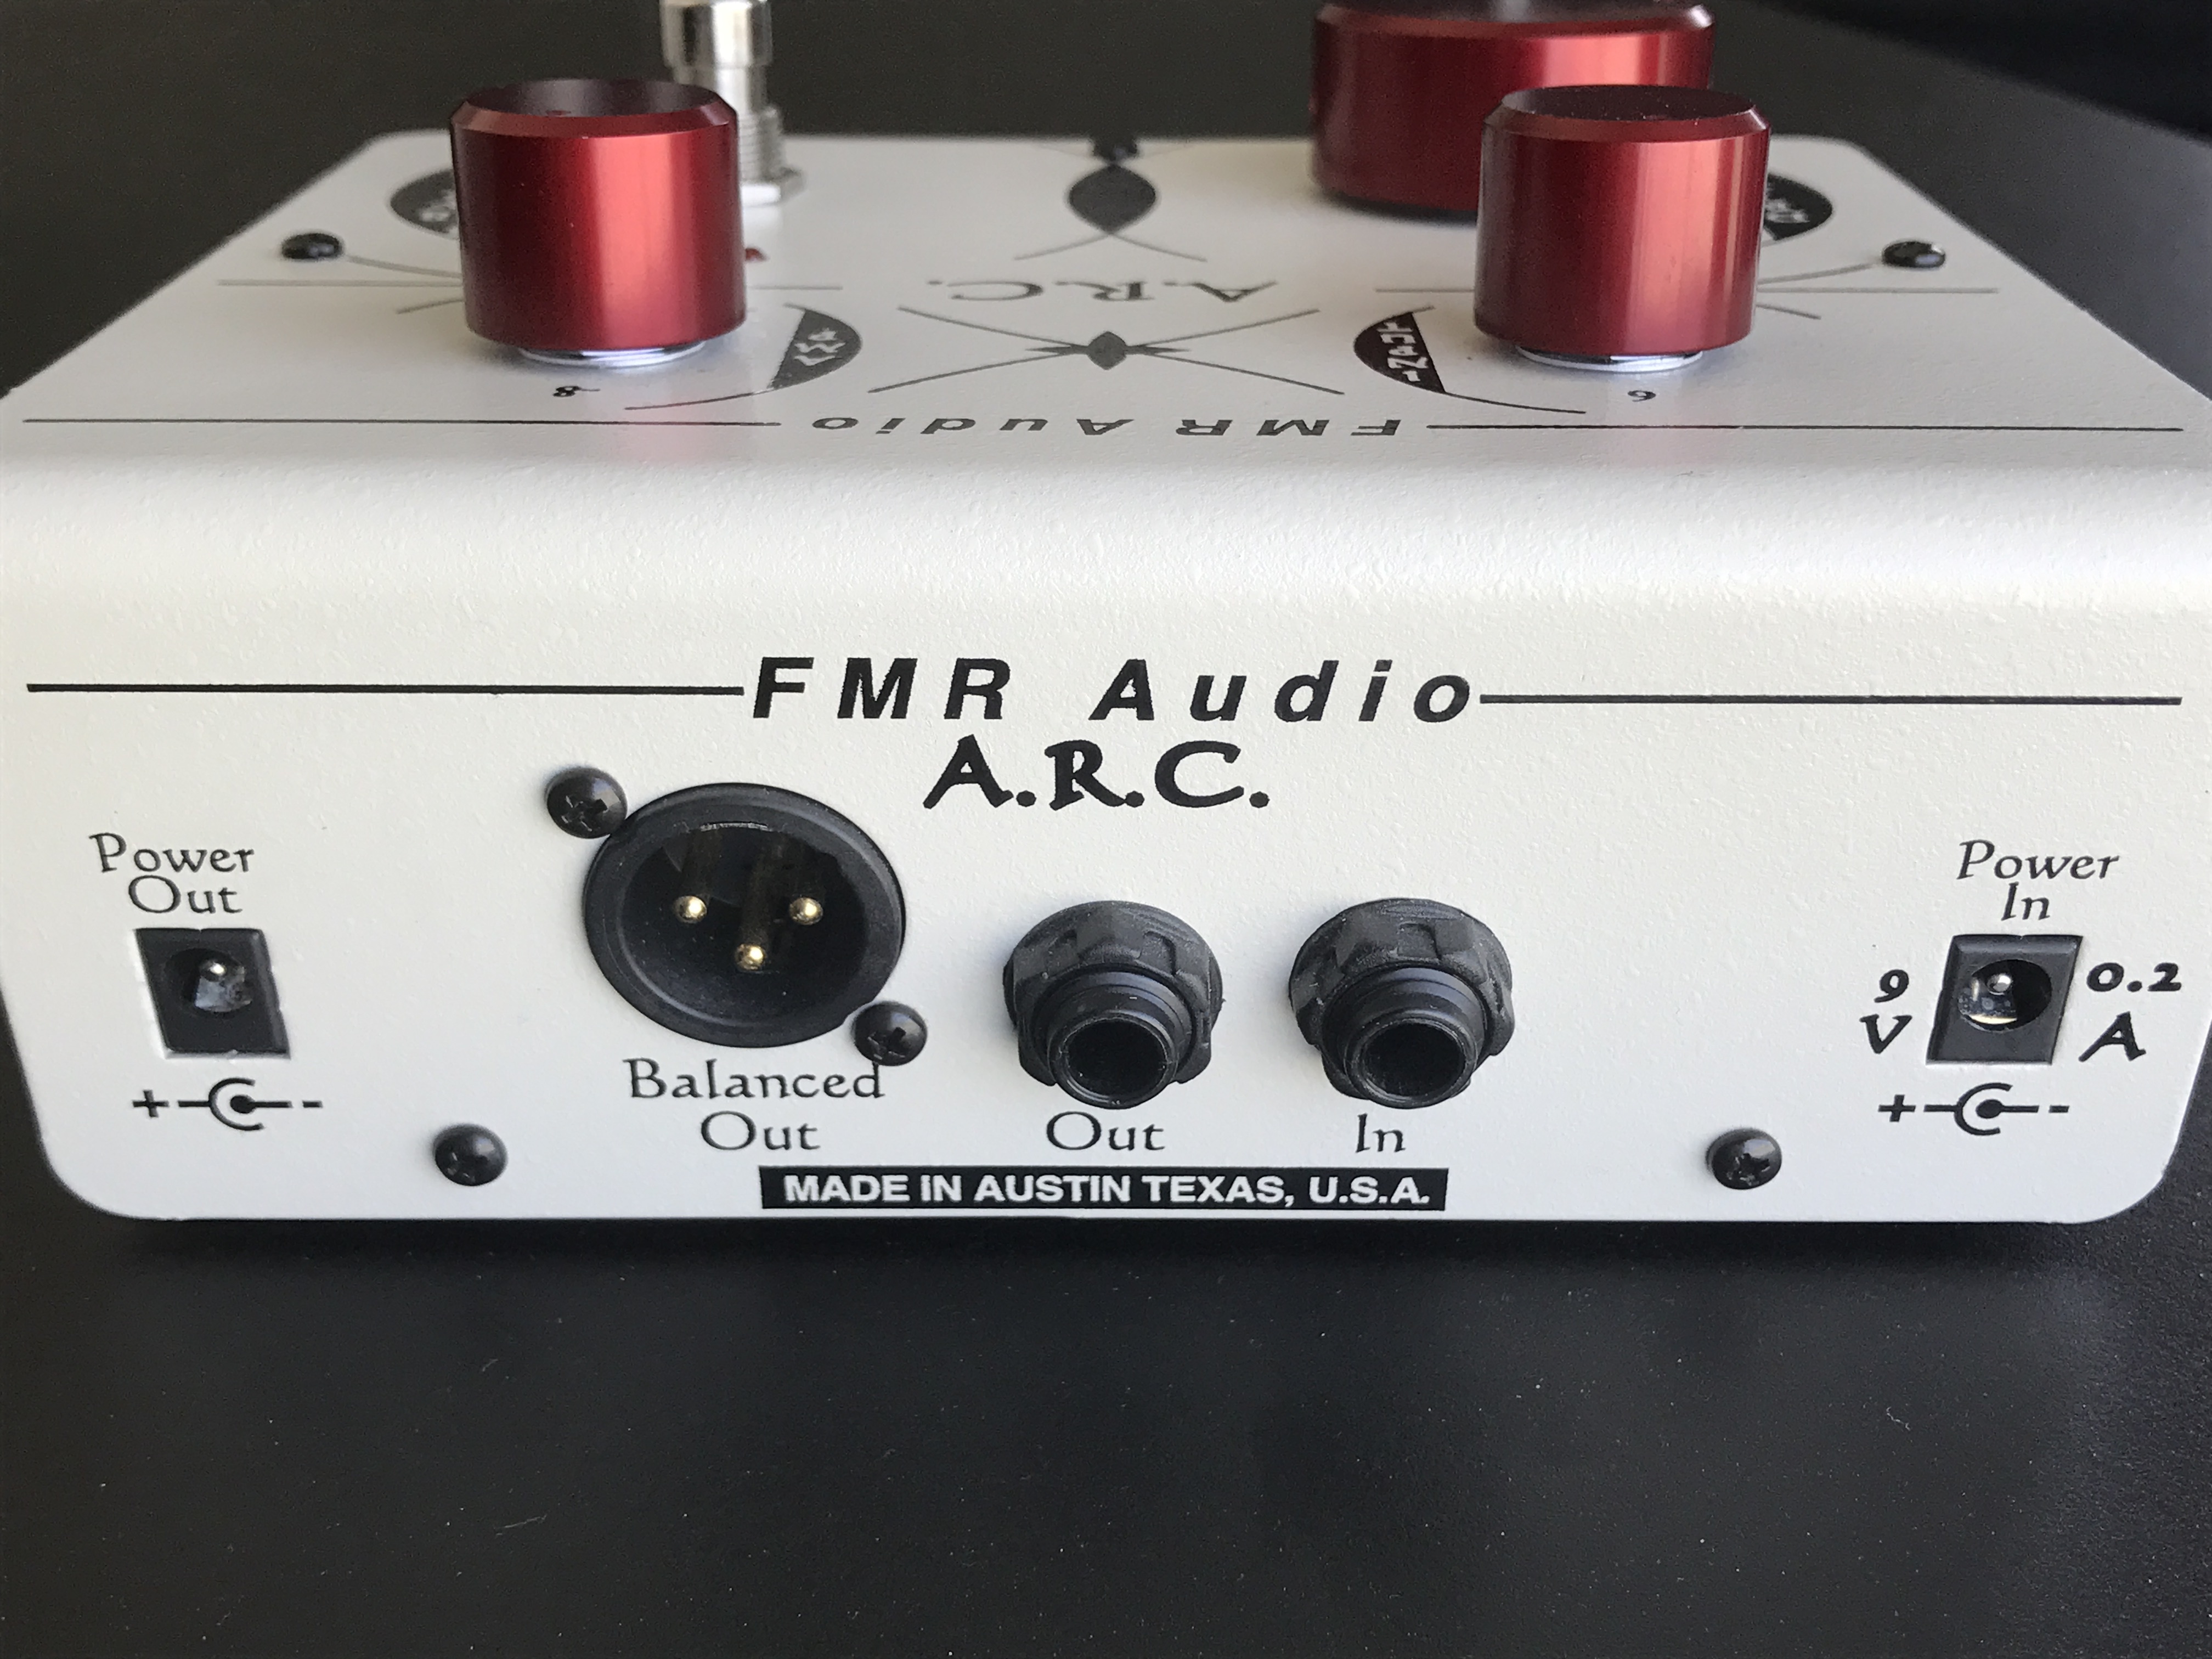 A.R.C. - FMR Audio A.R.C. - Audiofanzine